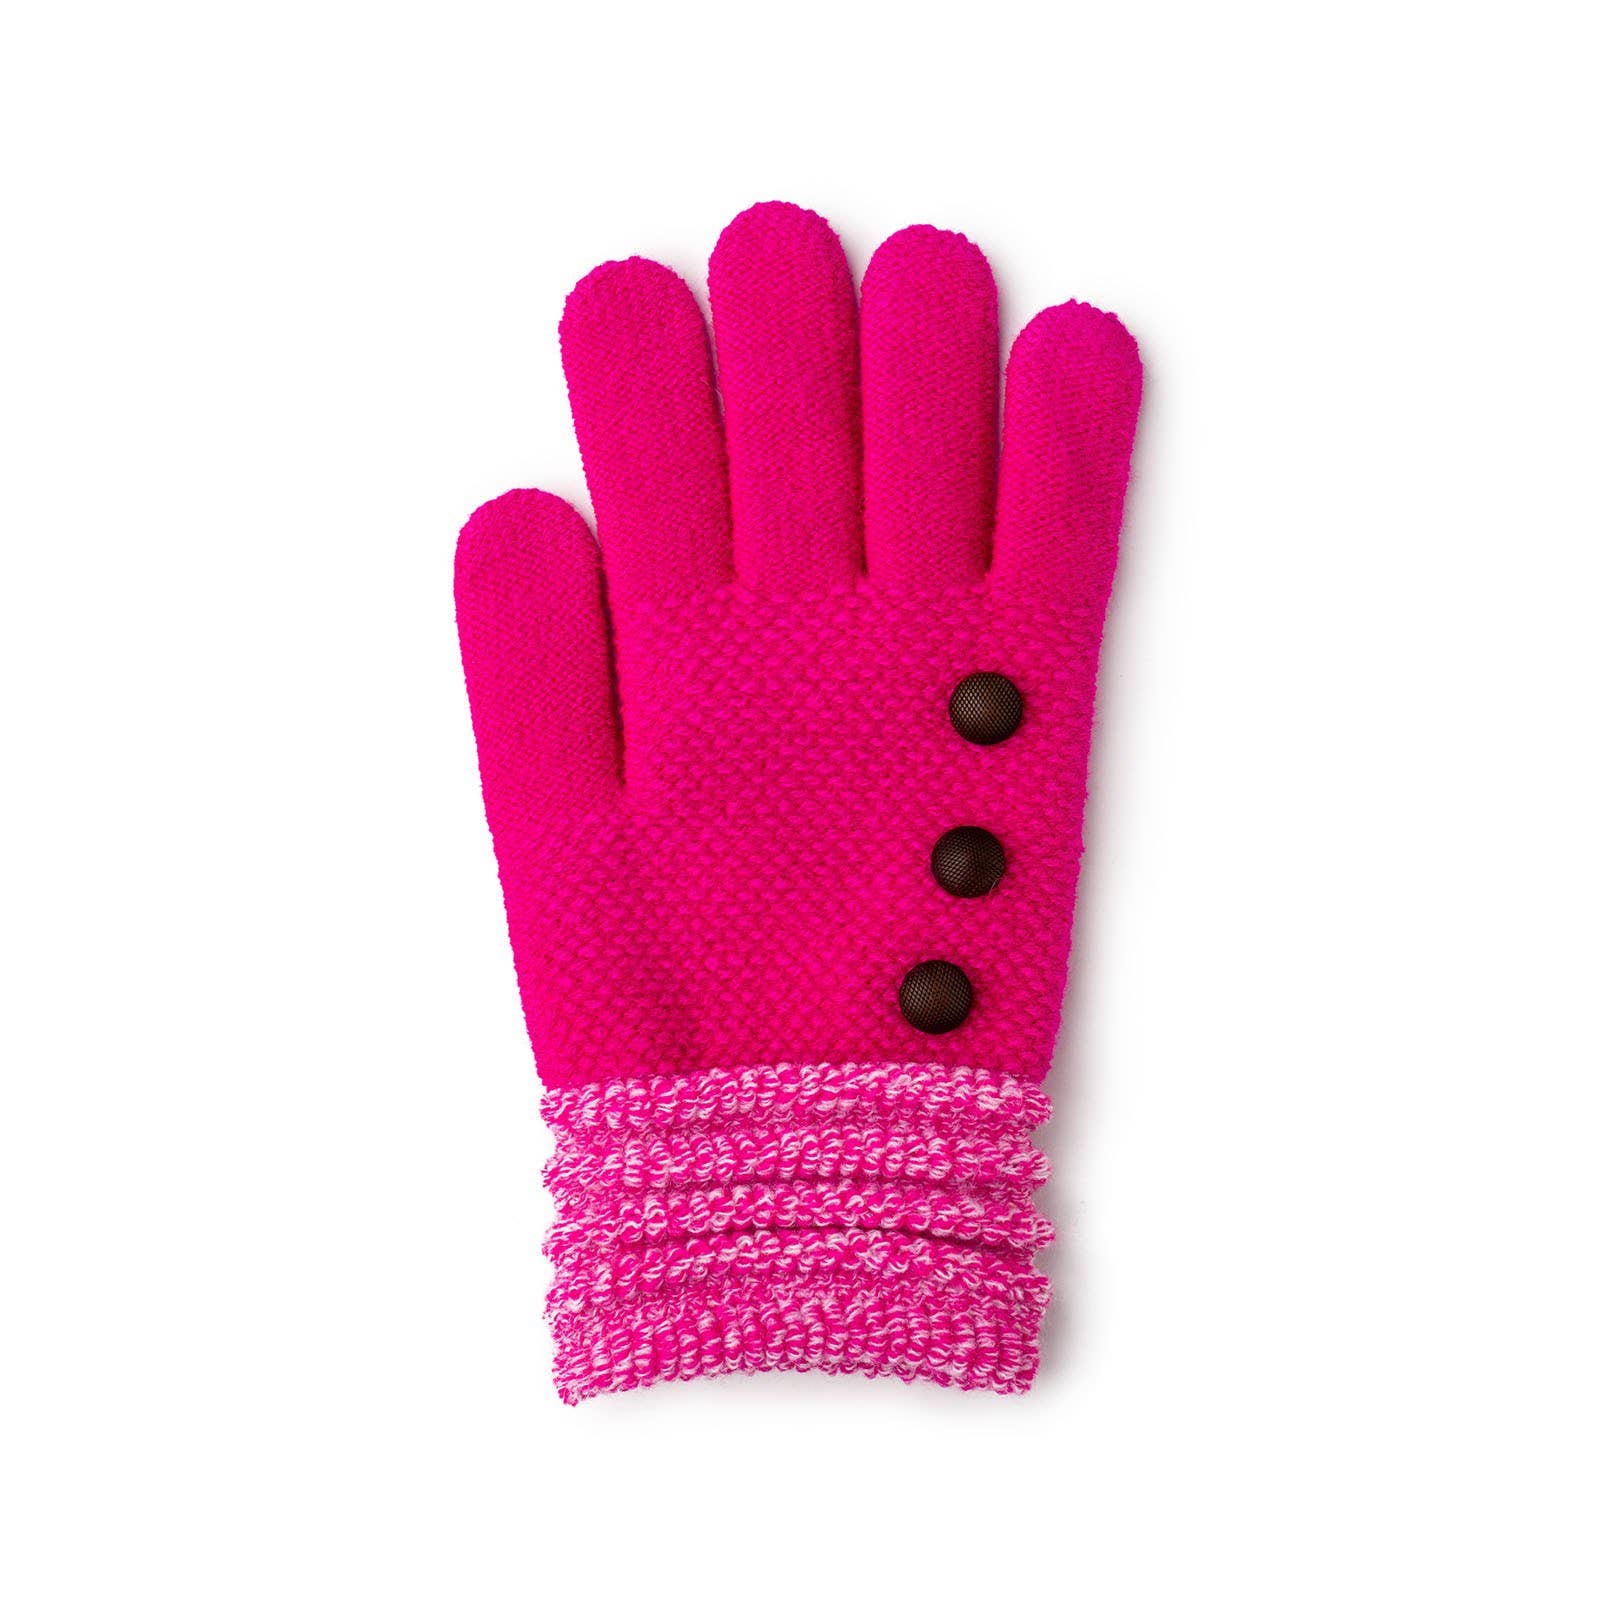 Britt's Knits Originals Gloves